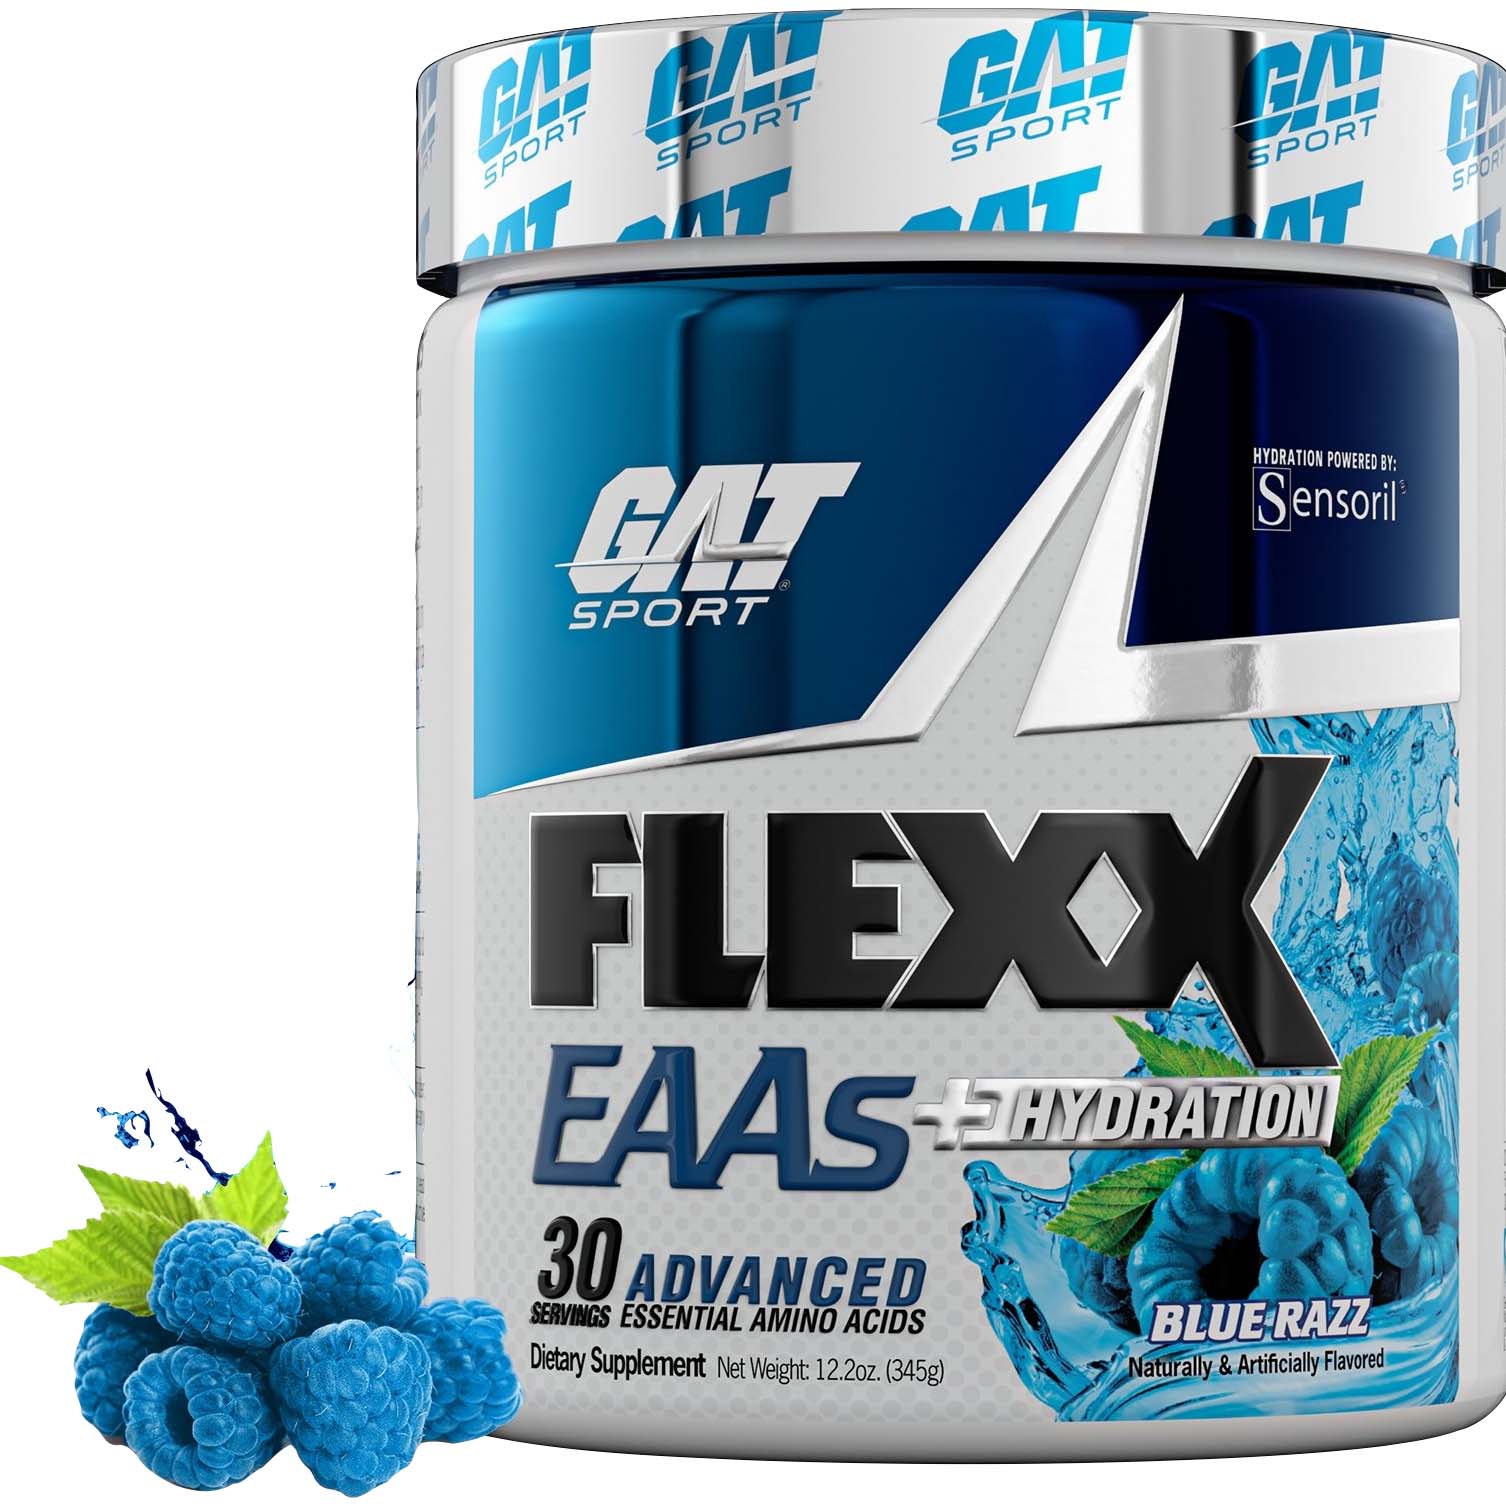 GAT Sport Flexx Eaas, Blue Raz, 30